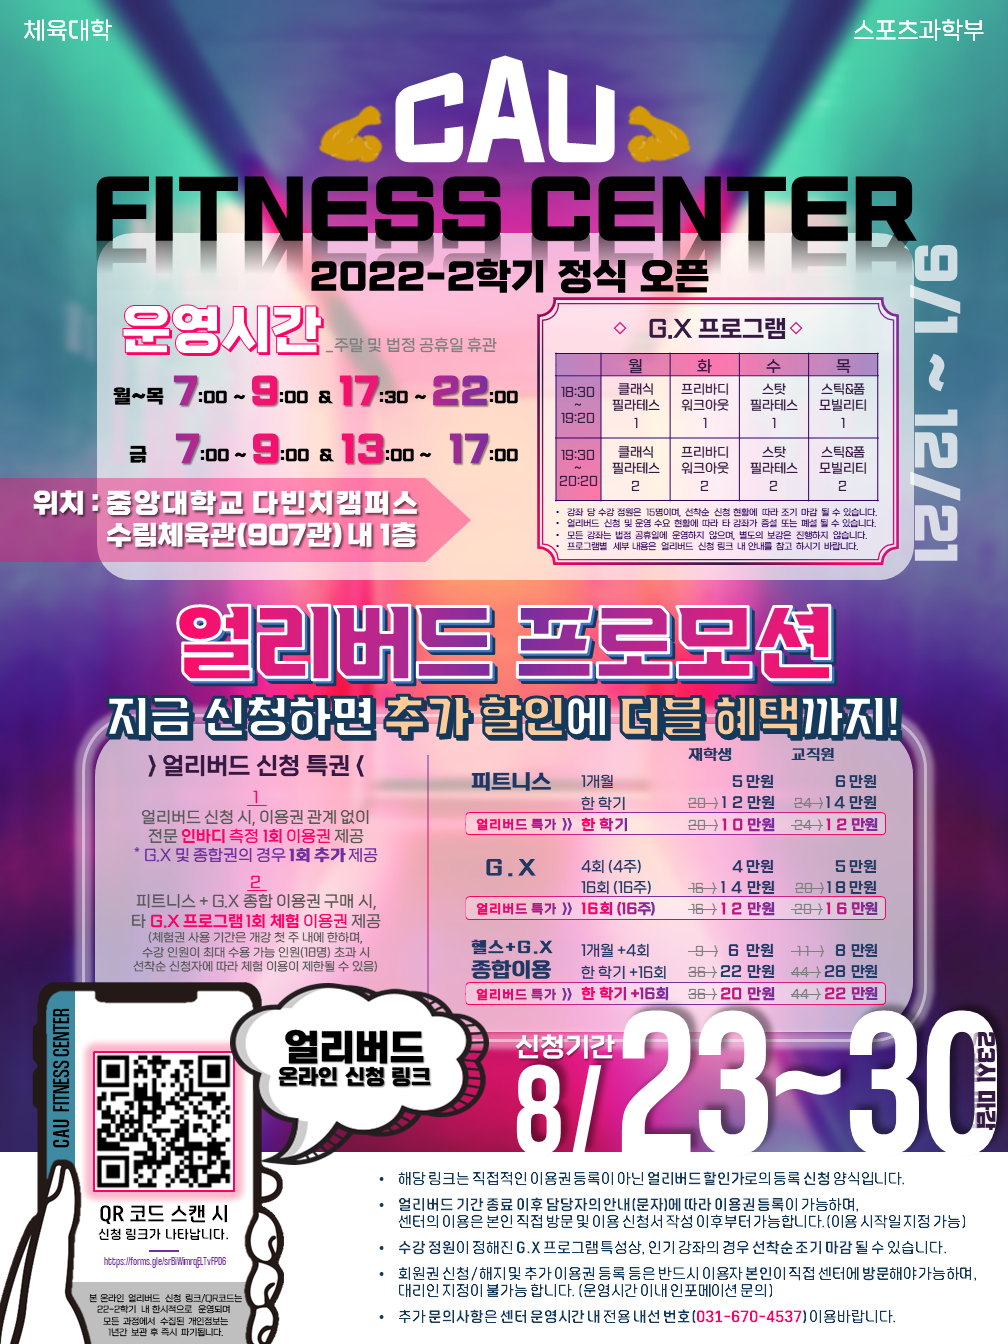 (붙임1)_2022 2학기 CAU Fitness Center 홍보물.png